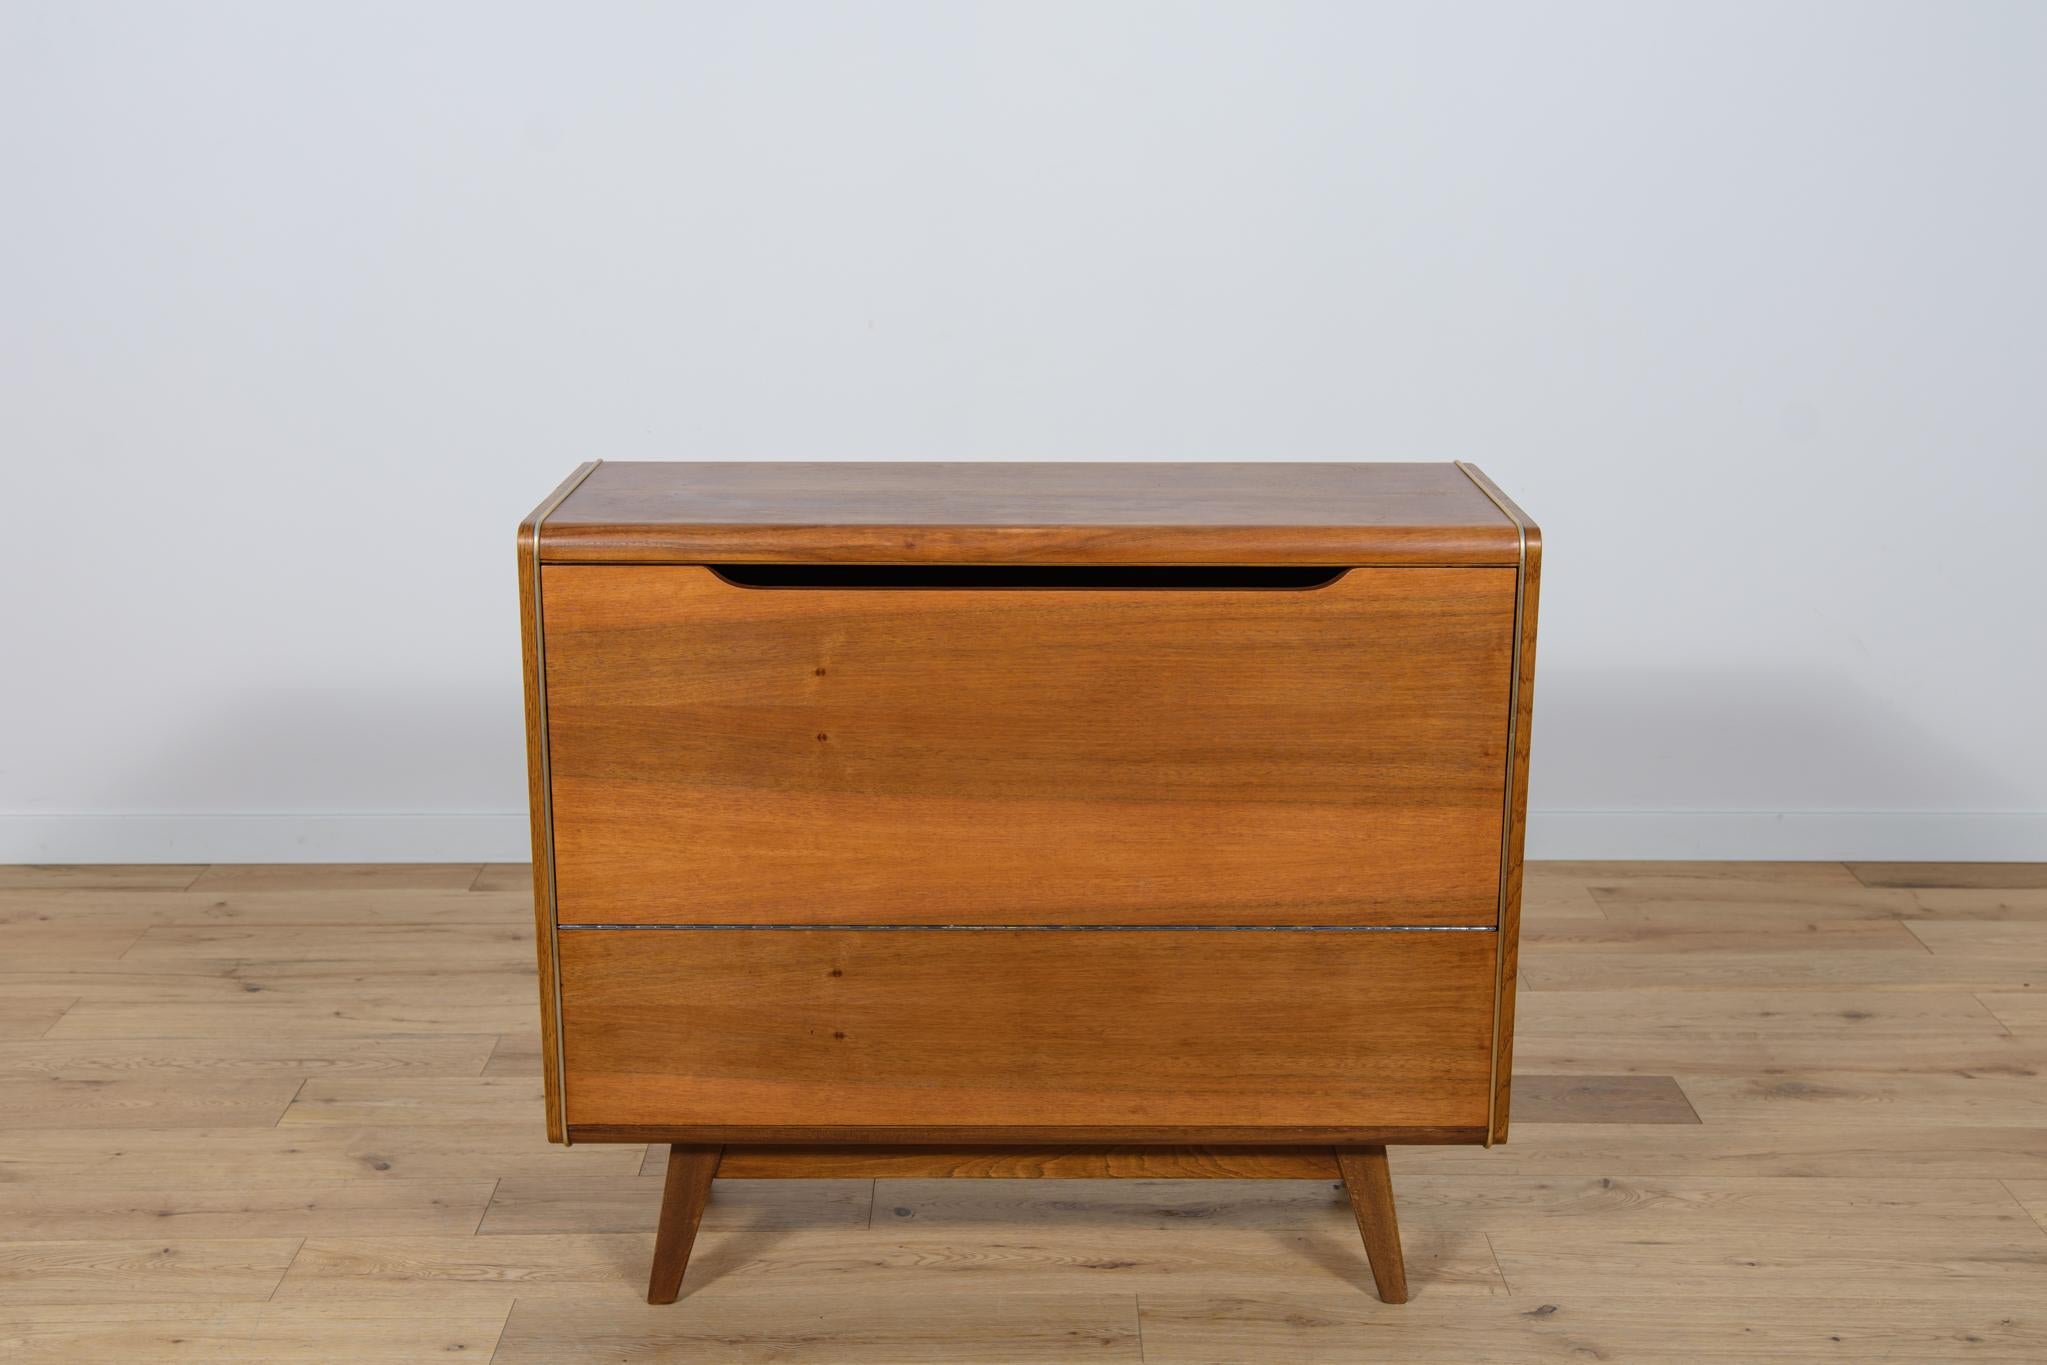 
Le mobilier a été conçu par Bohumil Landsman dans les années 1960. Il a été produit par l'usine de meubles Jitona Soběslav en République tchèque. À l'origine, ce meuble était utilisé comme chiffonnier. Lors de la rénovation, le mobilier a été